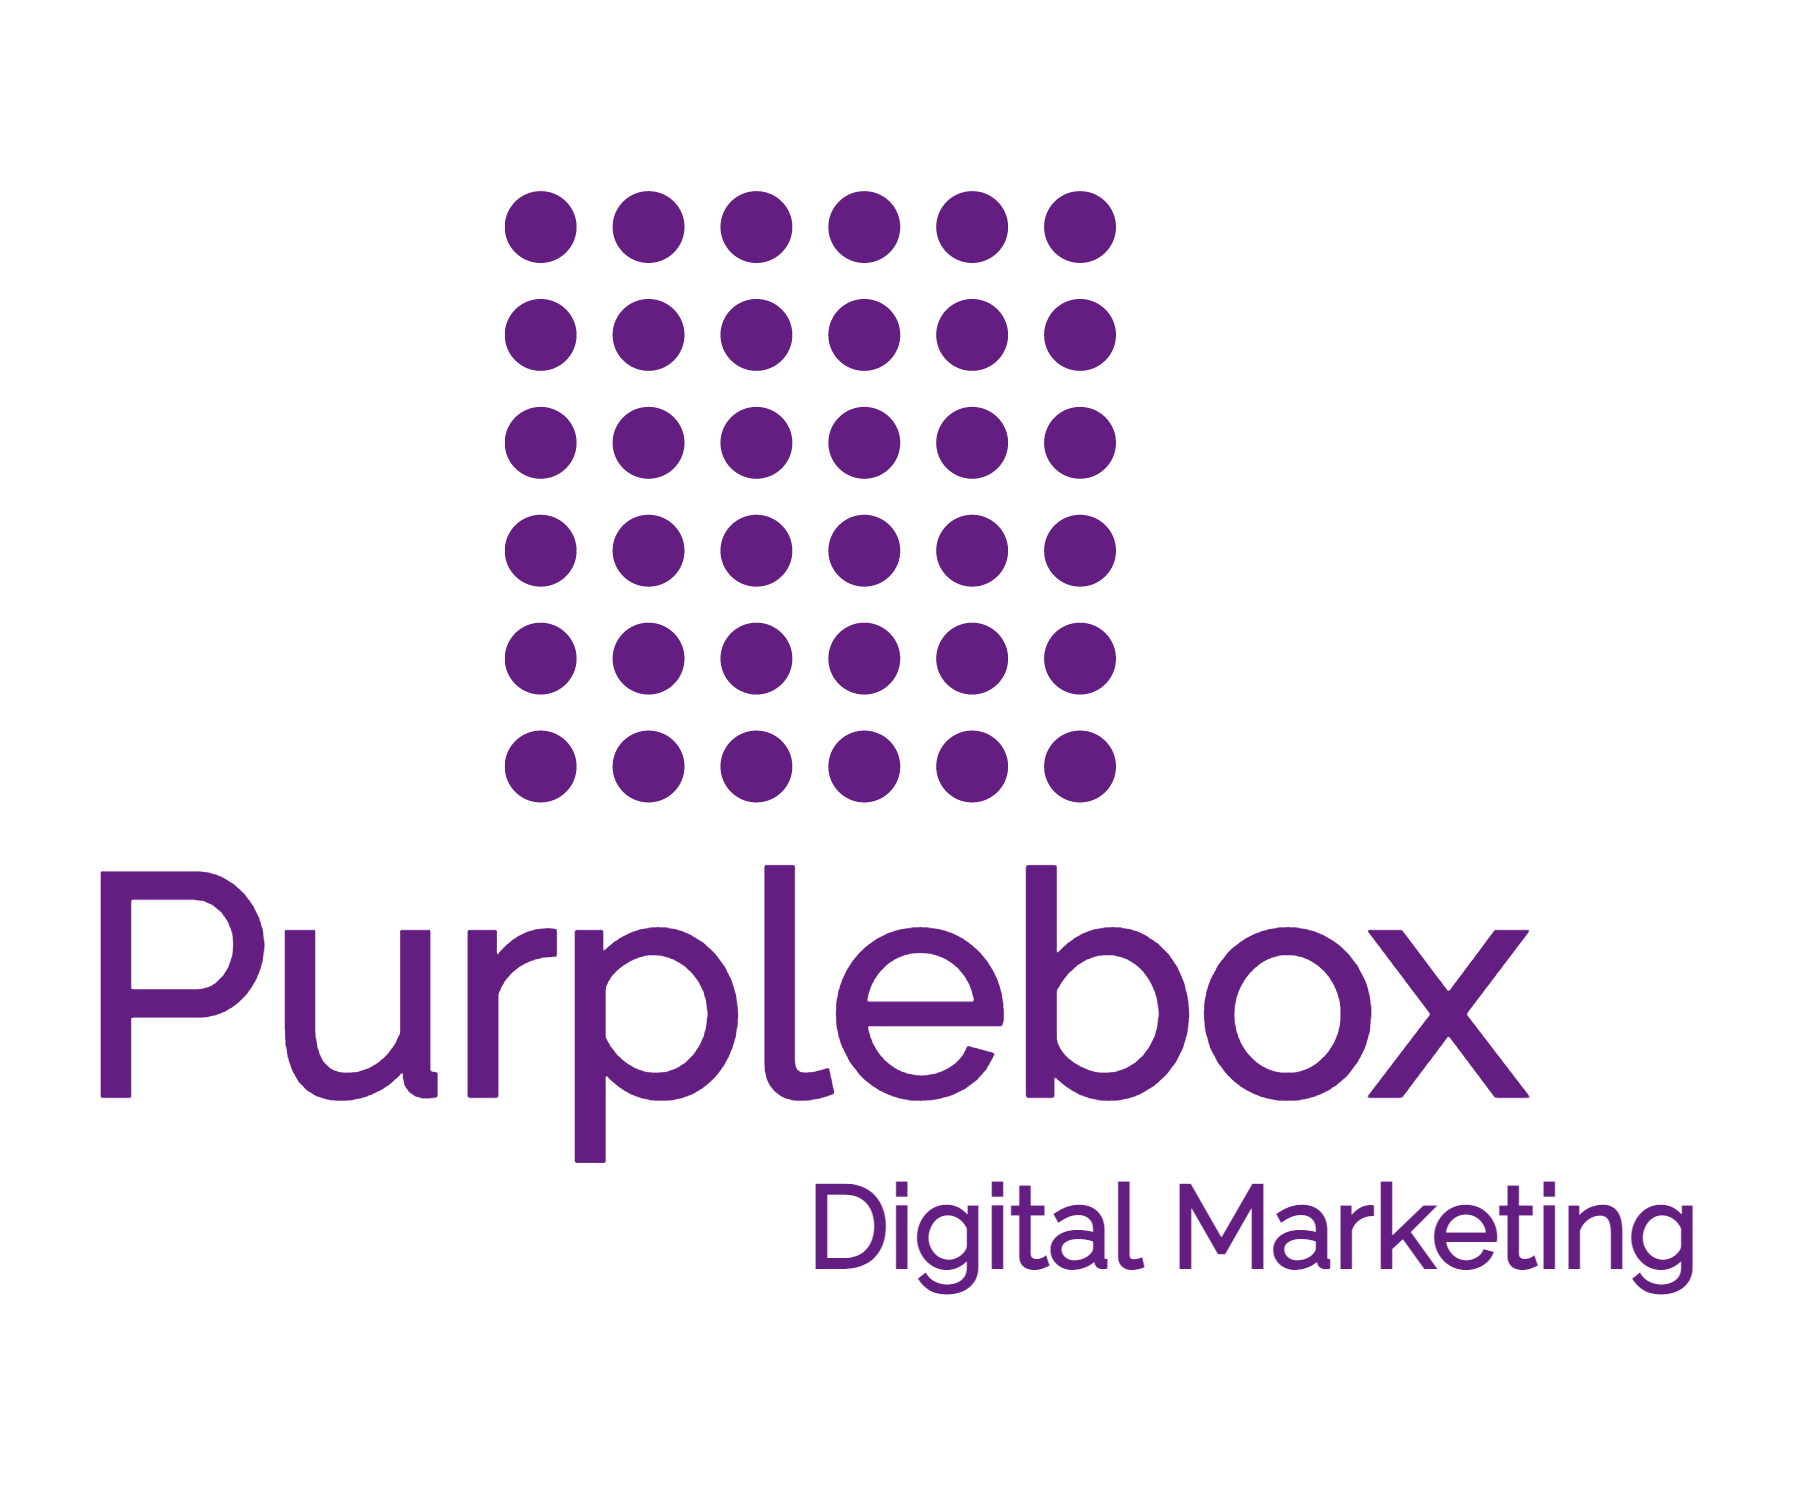 www.purpleboxsocialmedia.co.uk